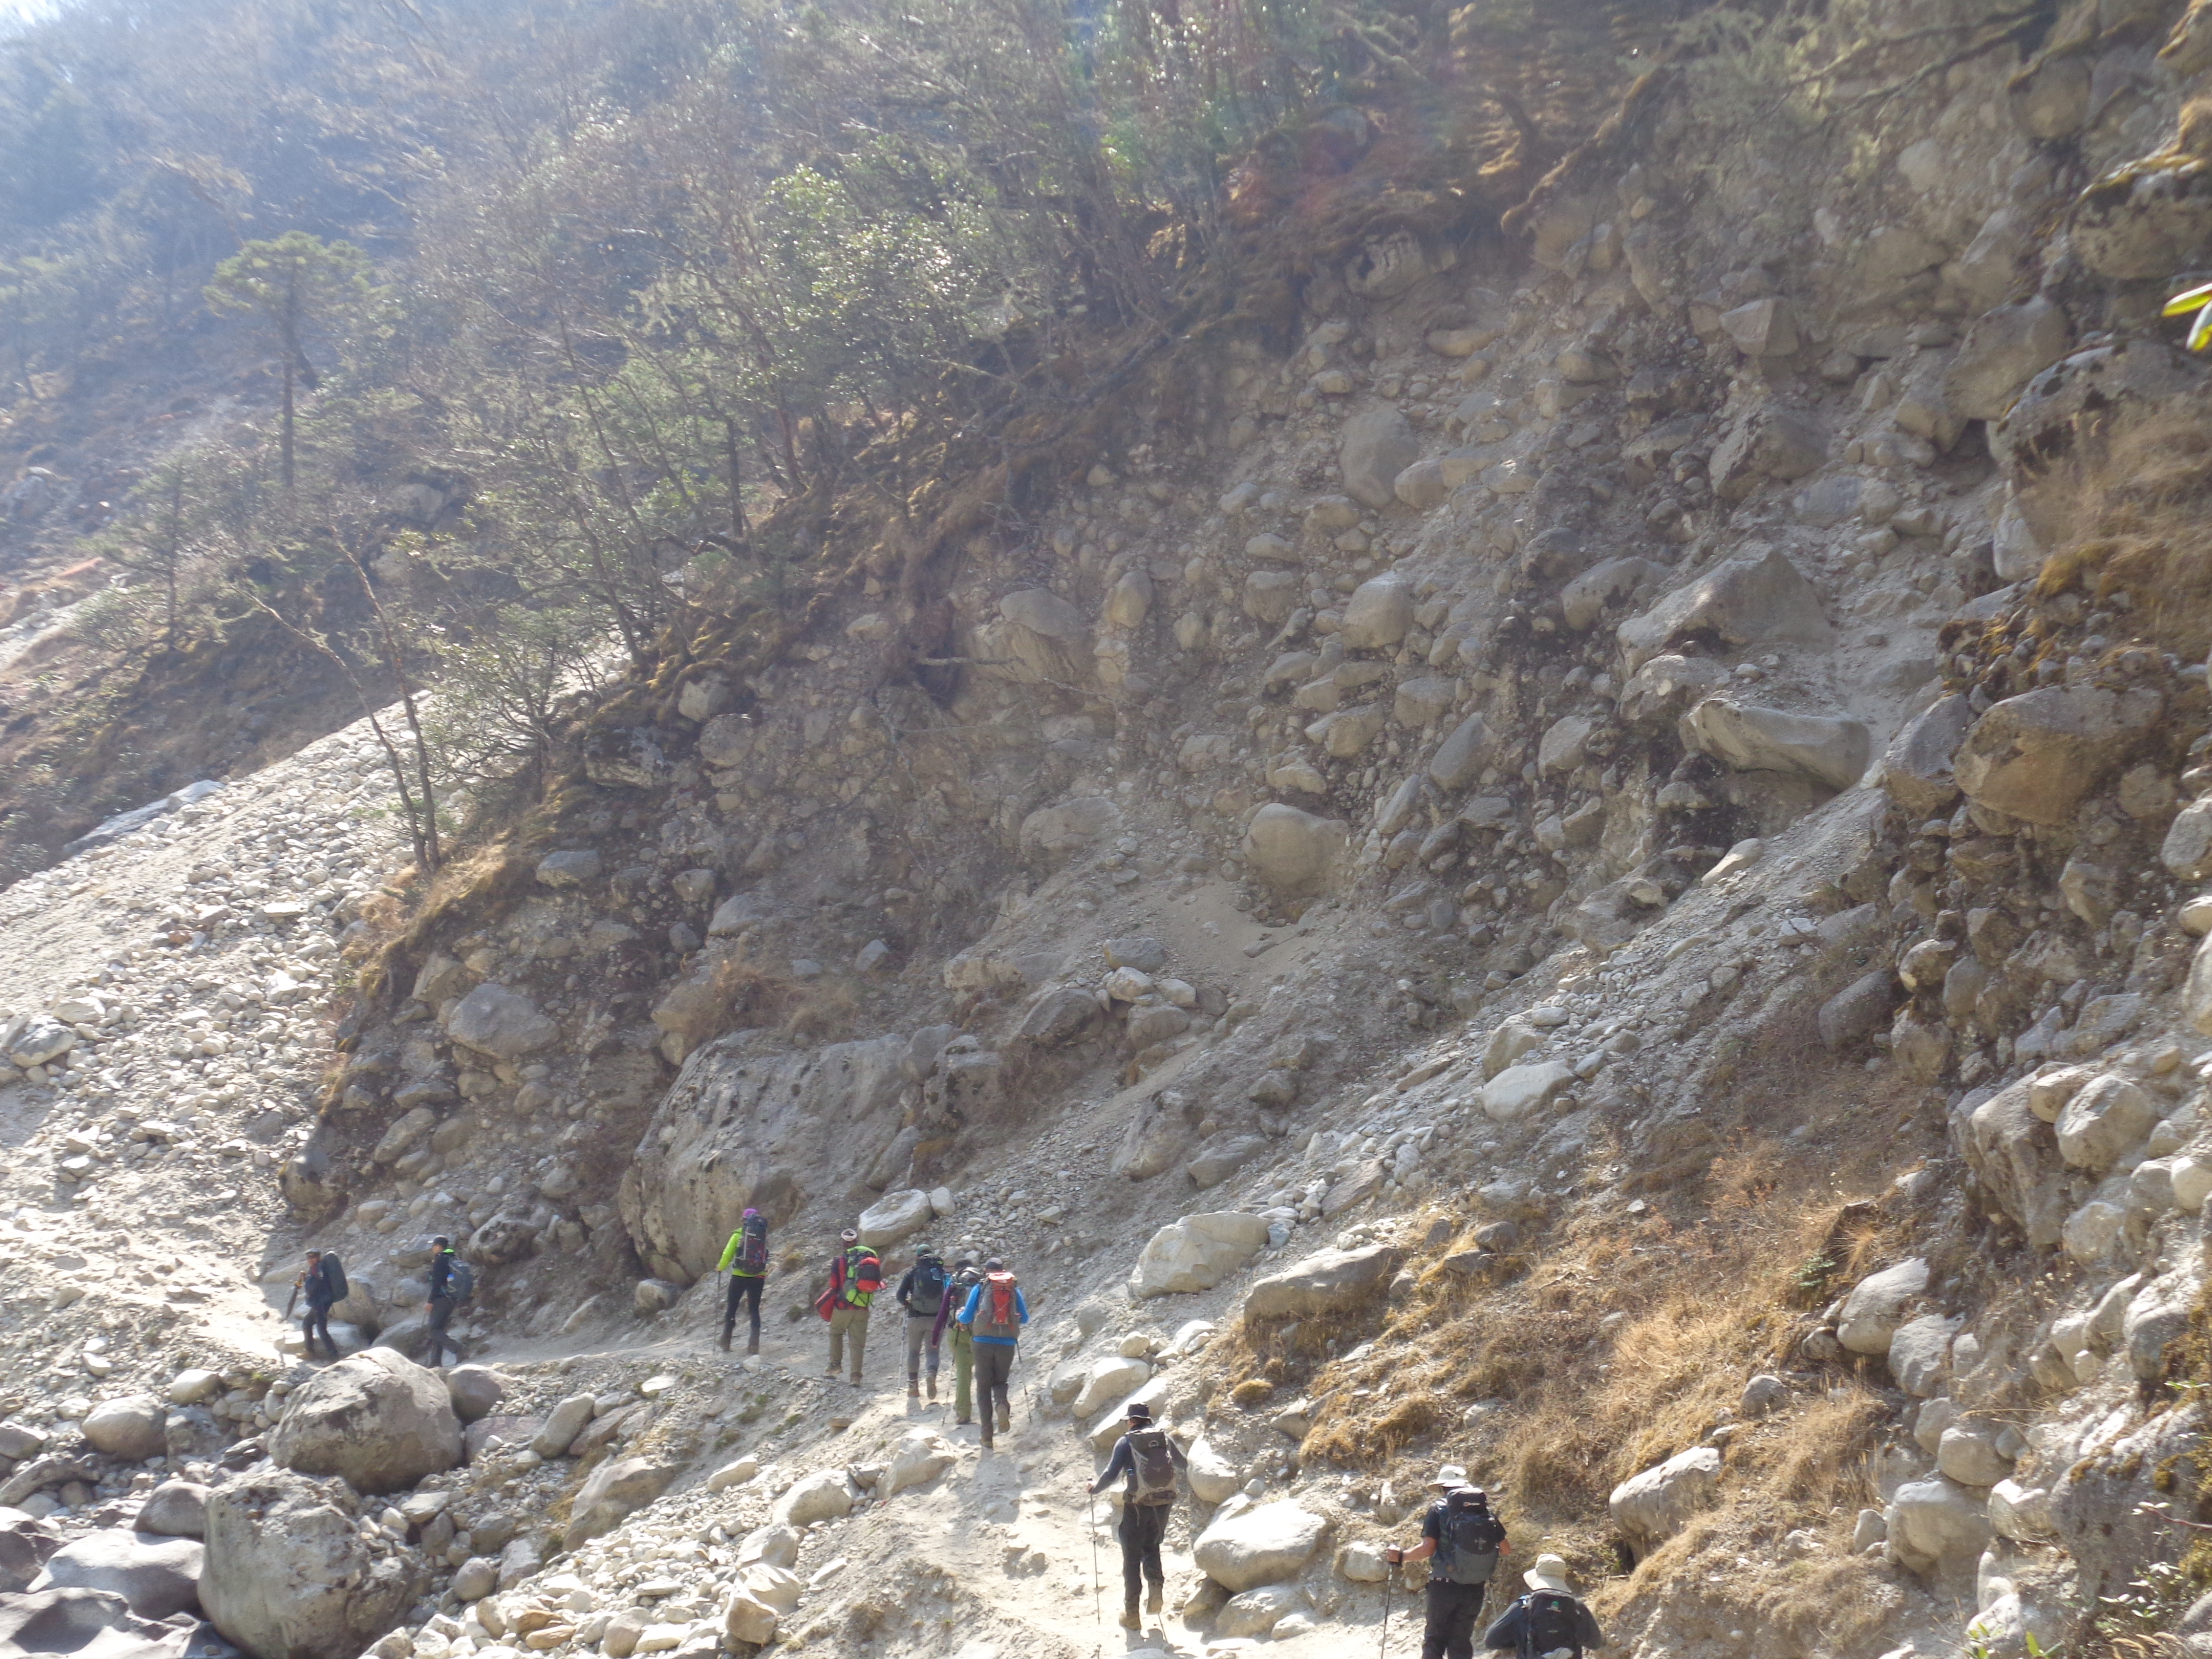 Dangerous landslide area on the Everest trek 